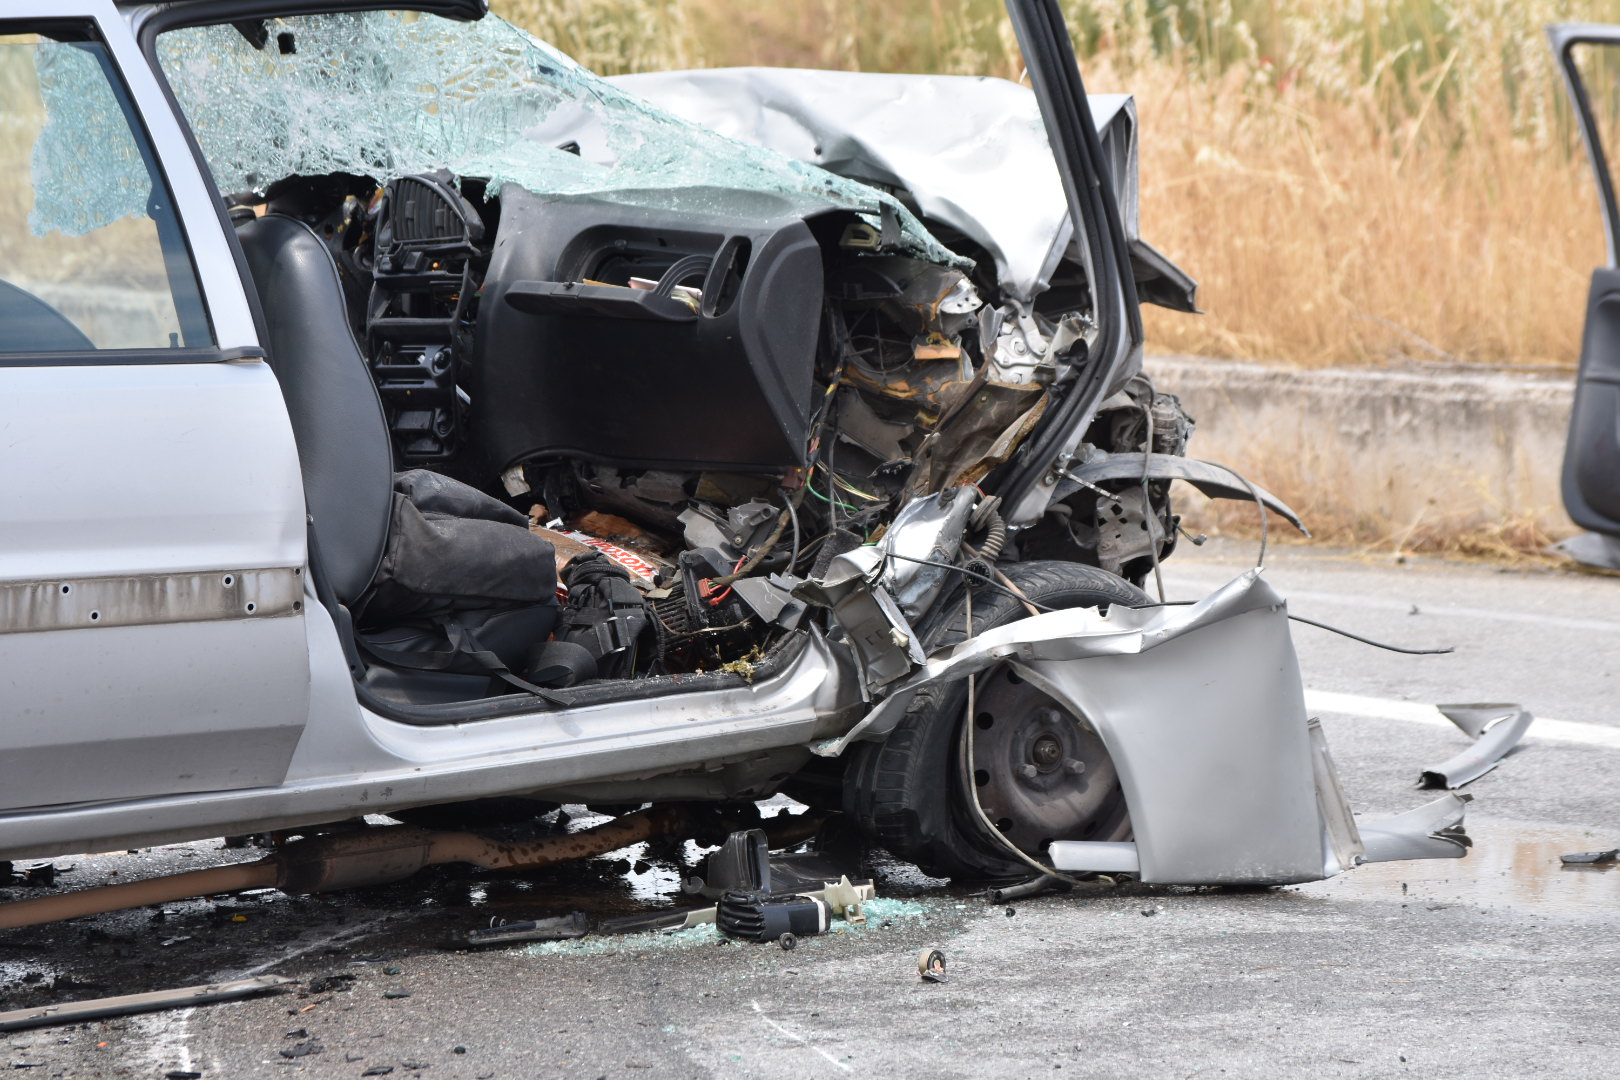 Λάρισα: Θανατηφόρο τροχαίο στον κόμβο Πλατυκάμπου - Σκοτώθηκε νεαρός οδηγός (Δείτε φωτογραφίες)